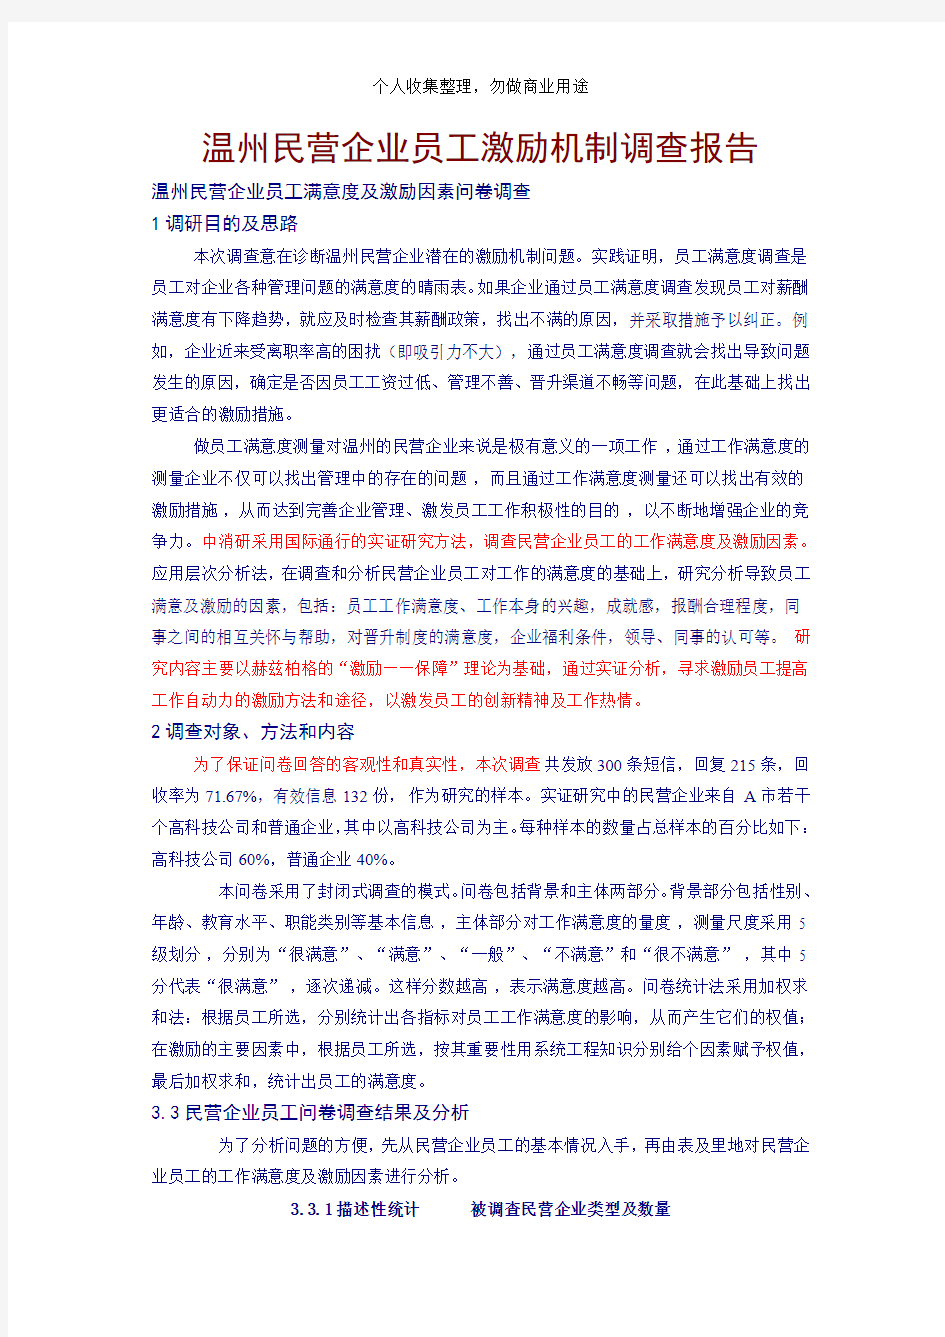 温州民营企业员工激励机制调查报告(13)